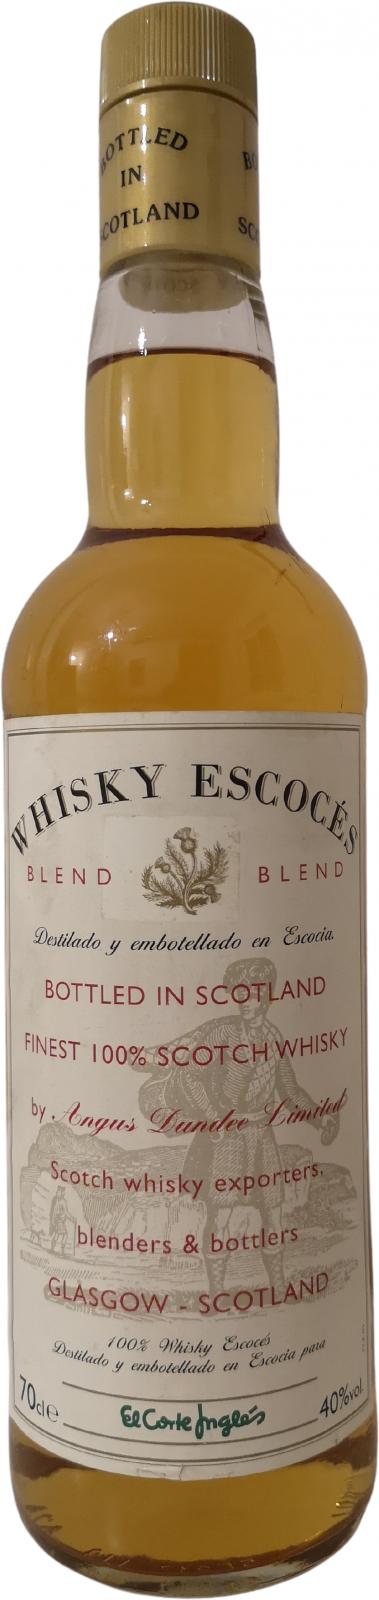 Whisky Escocés Blend